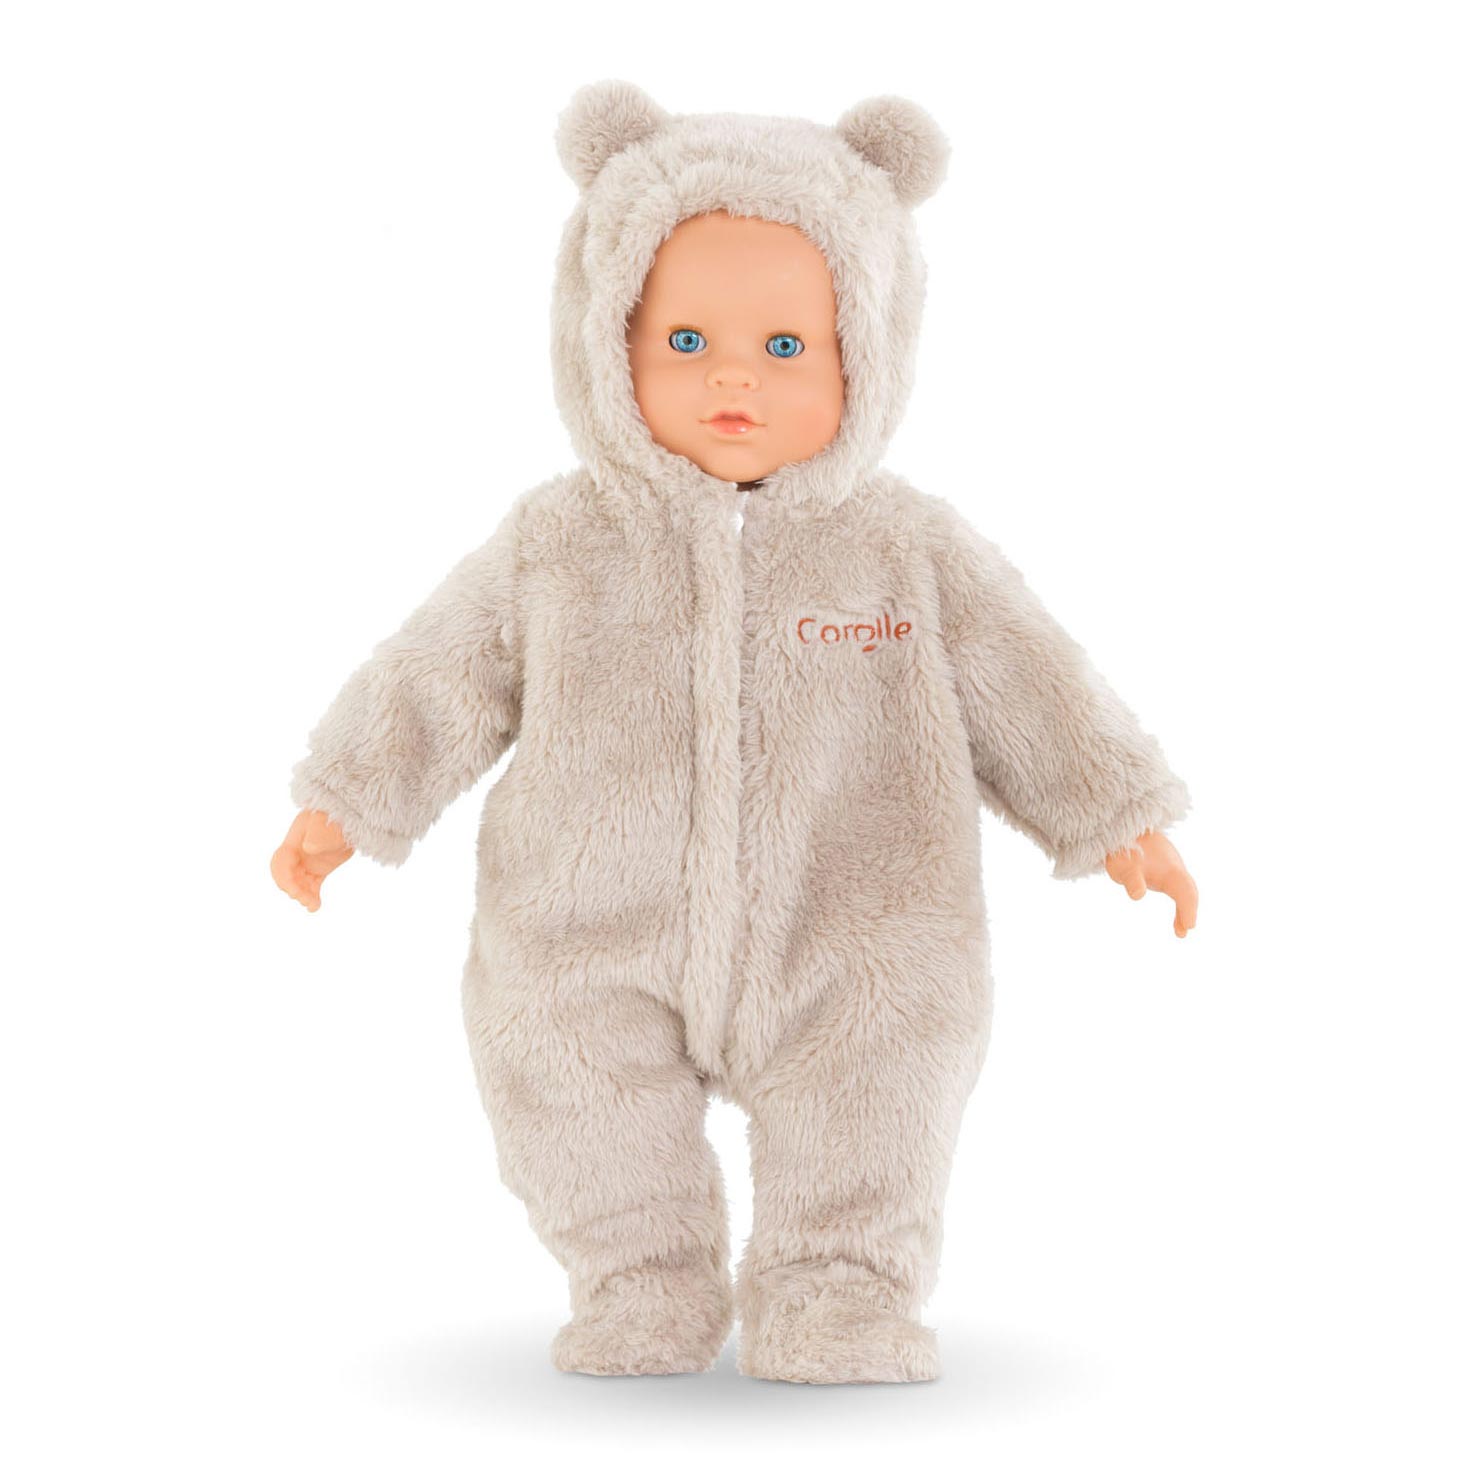 Corolle Mon Grand Poupon - Costume d'ours pour poupée, 42cm